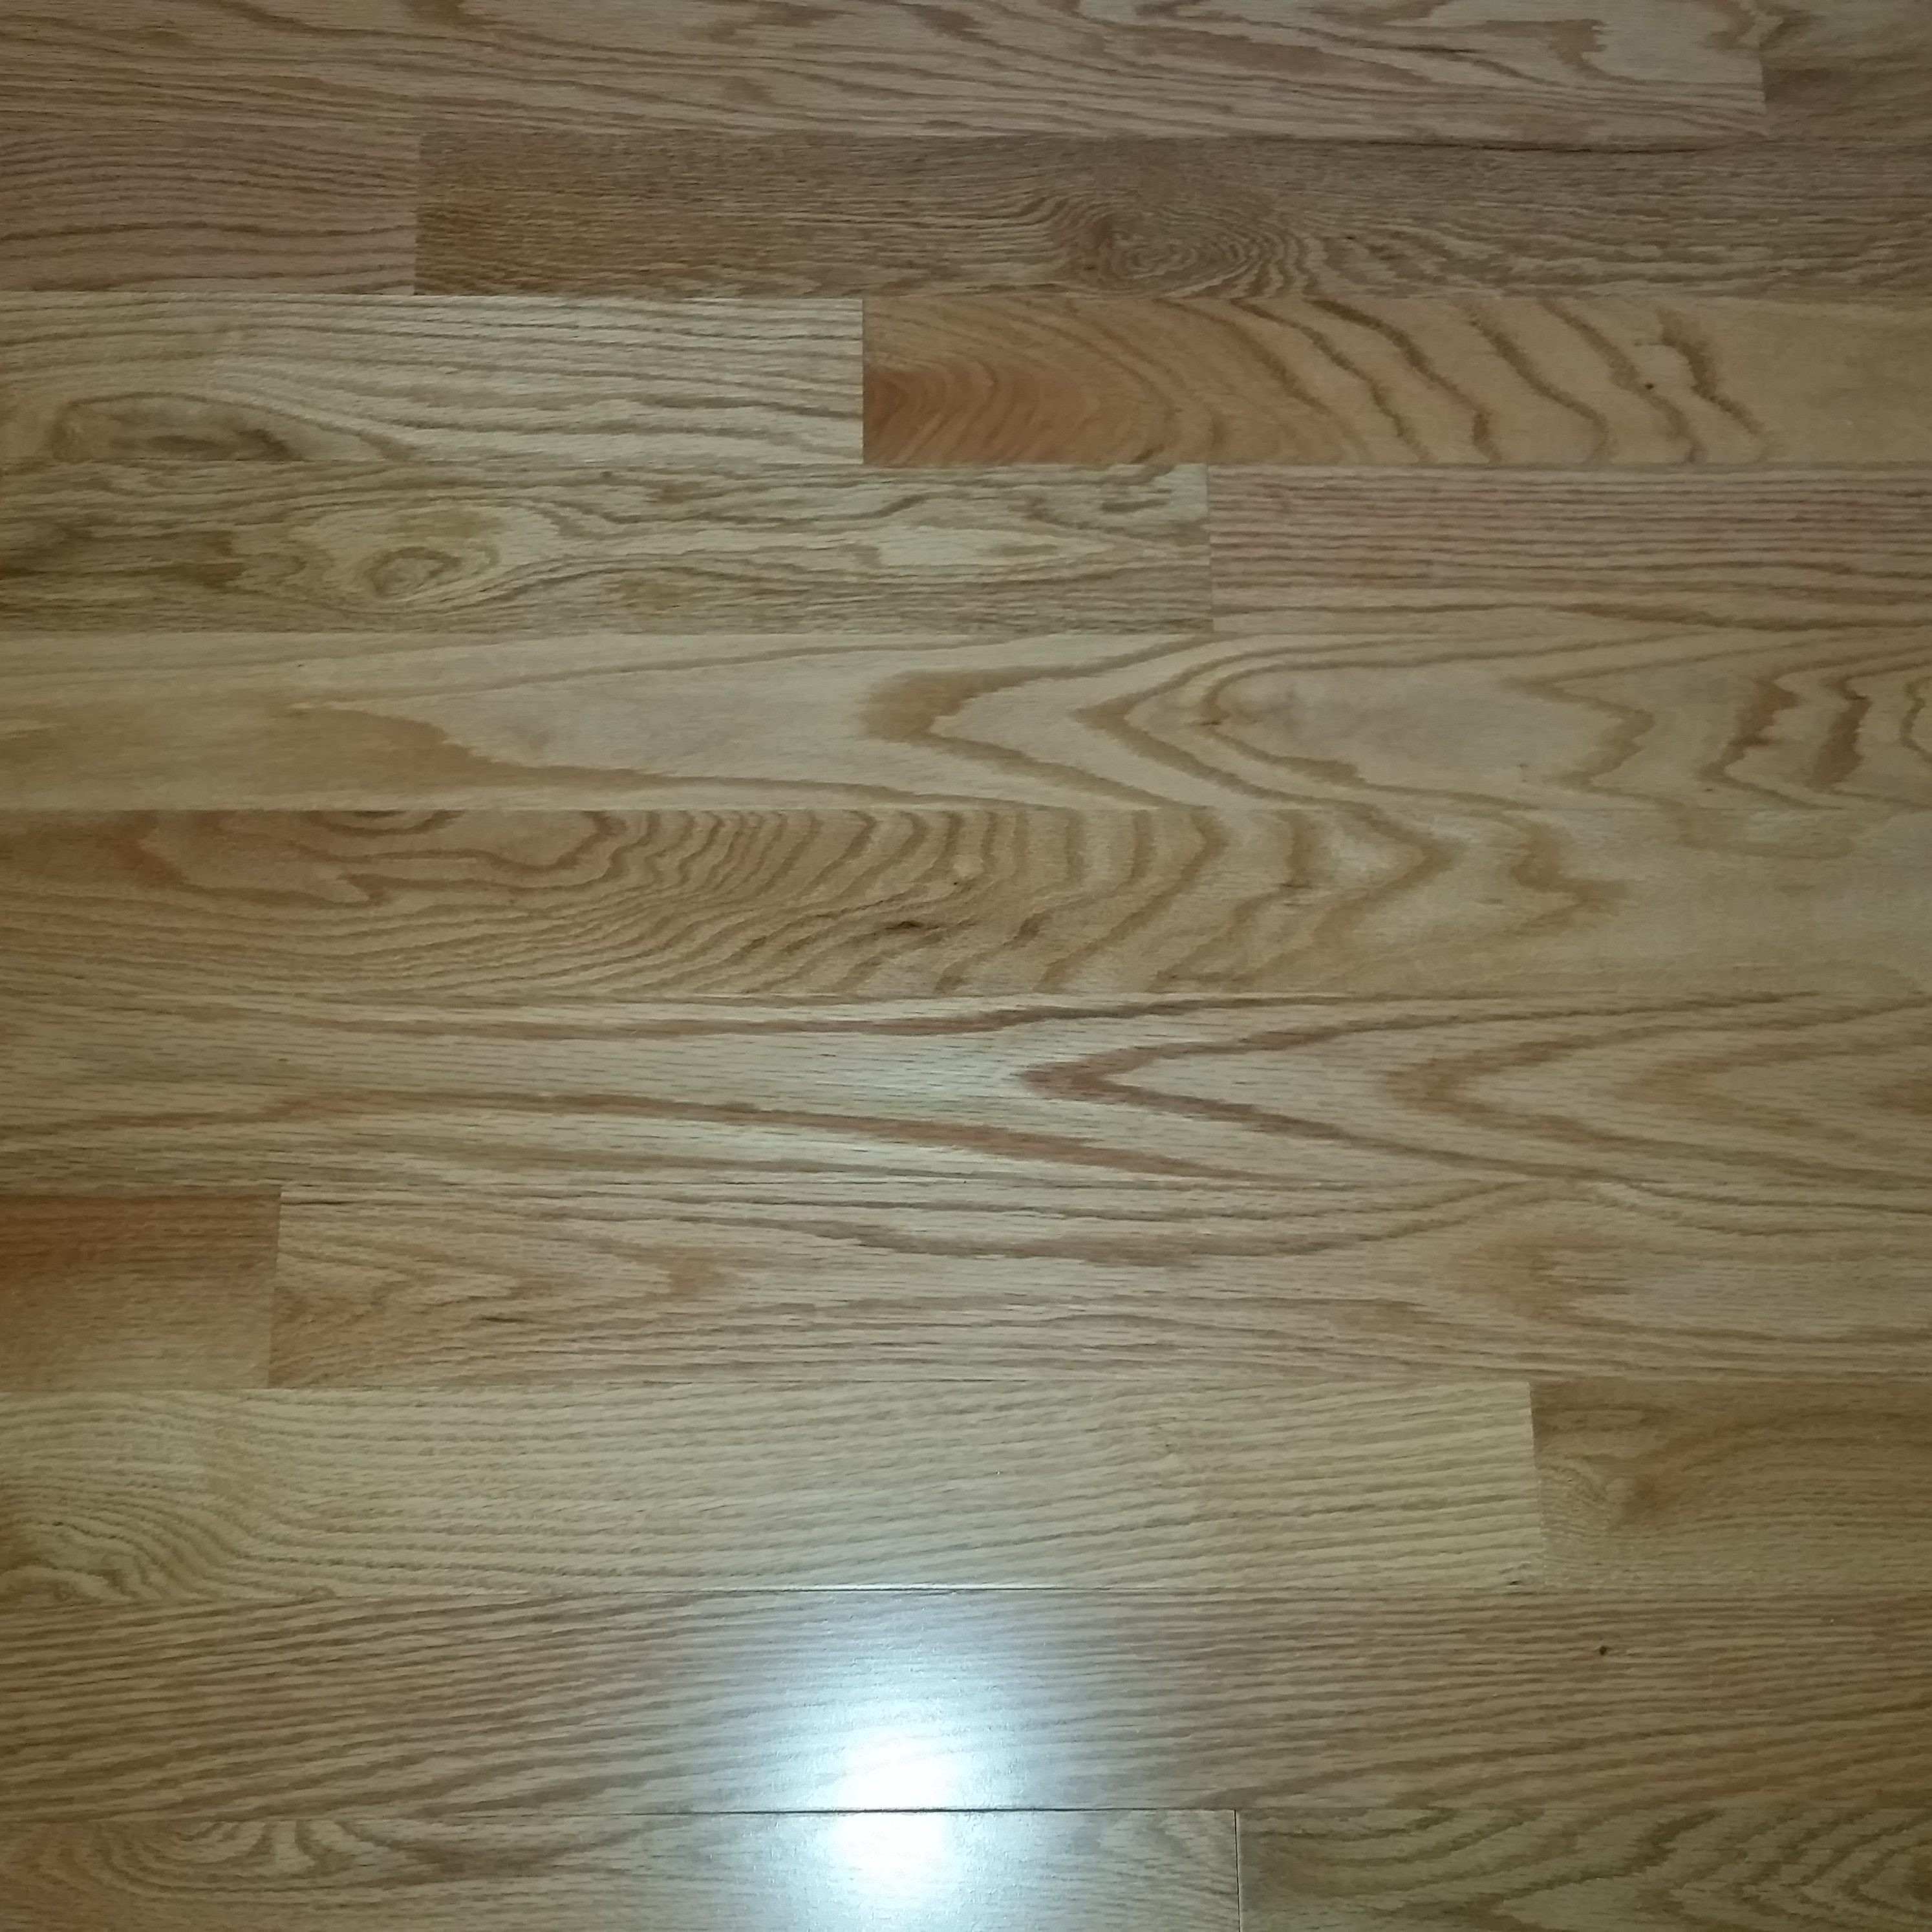 23 Great Hardwood Floor Refinishing Utah Unique Flooring Ideas